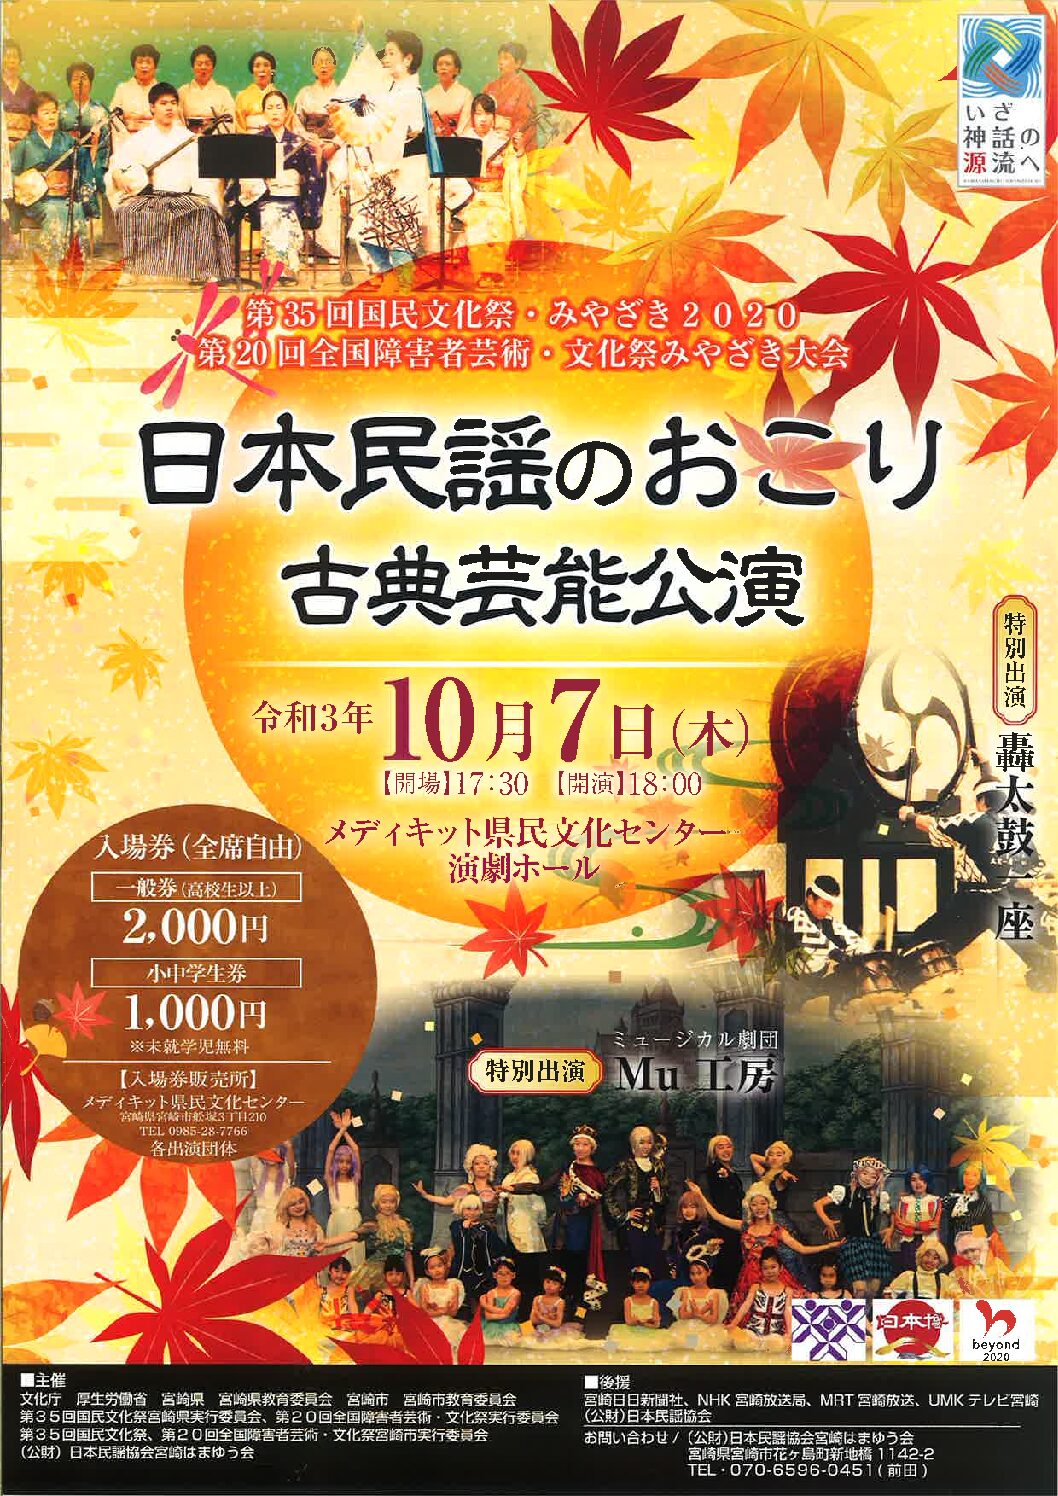 国民文化祭 分野別フェスティバル 日本民謡のおこり古典芸能公演 メディキット県民文化センター